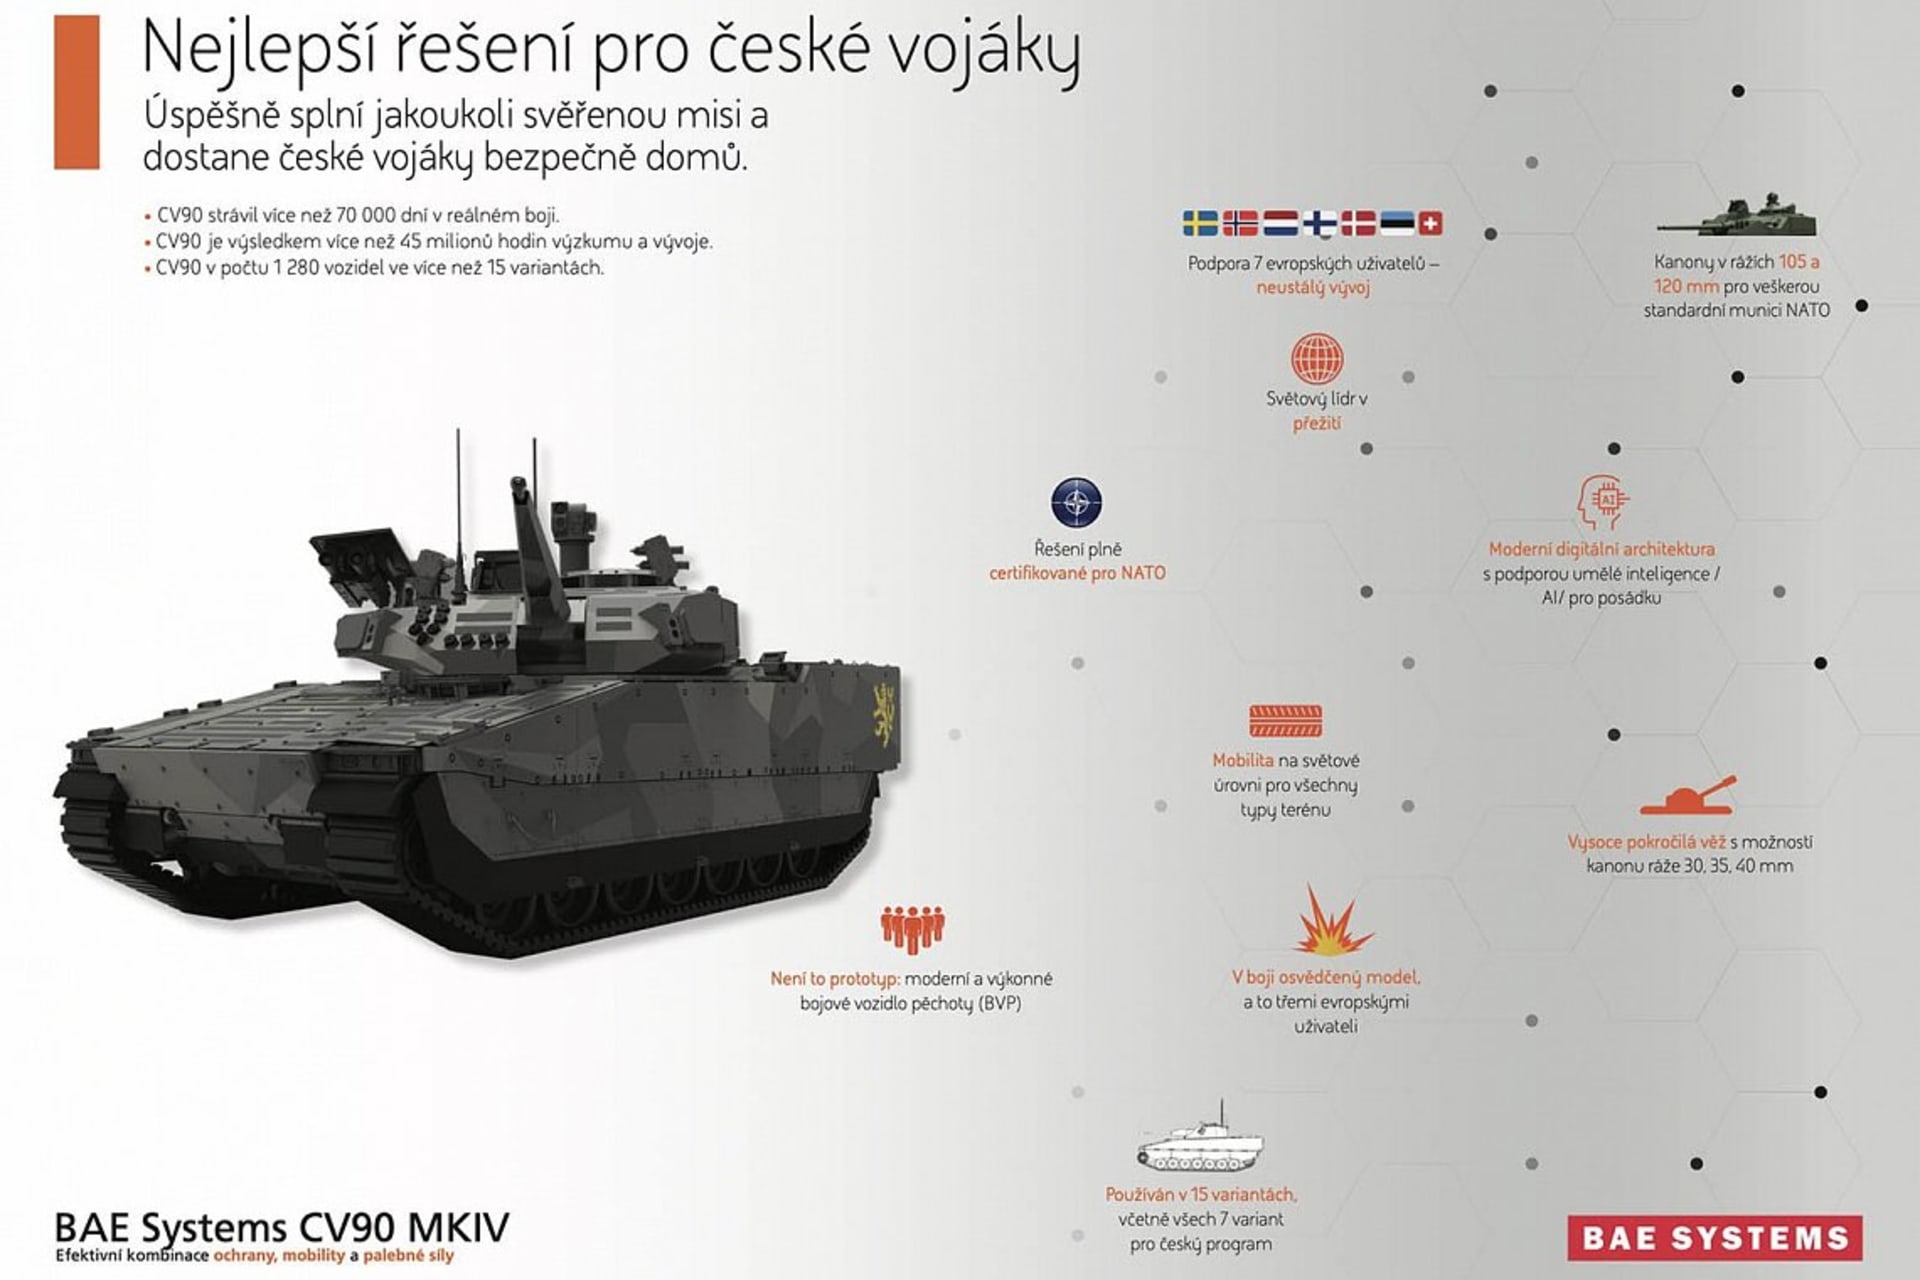 Prezentace společnosti BAE Systems ke švédskému bojovému vozidlu pěchoty CV90